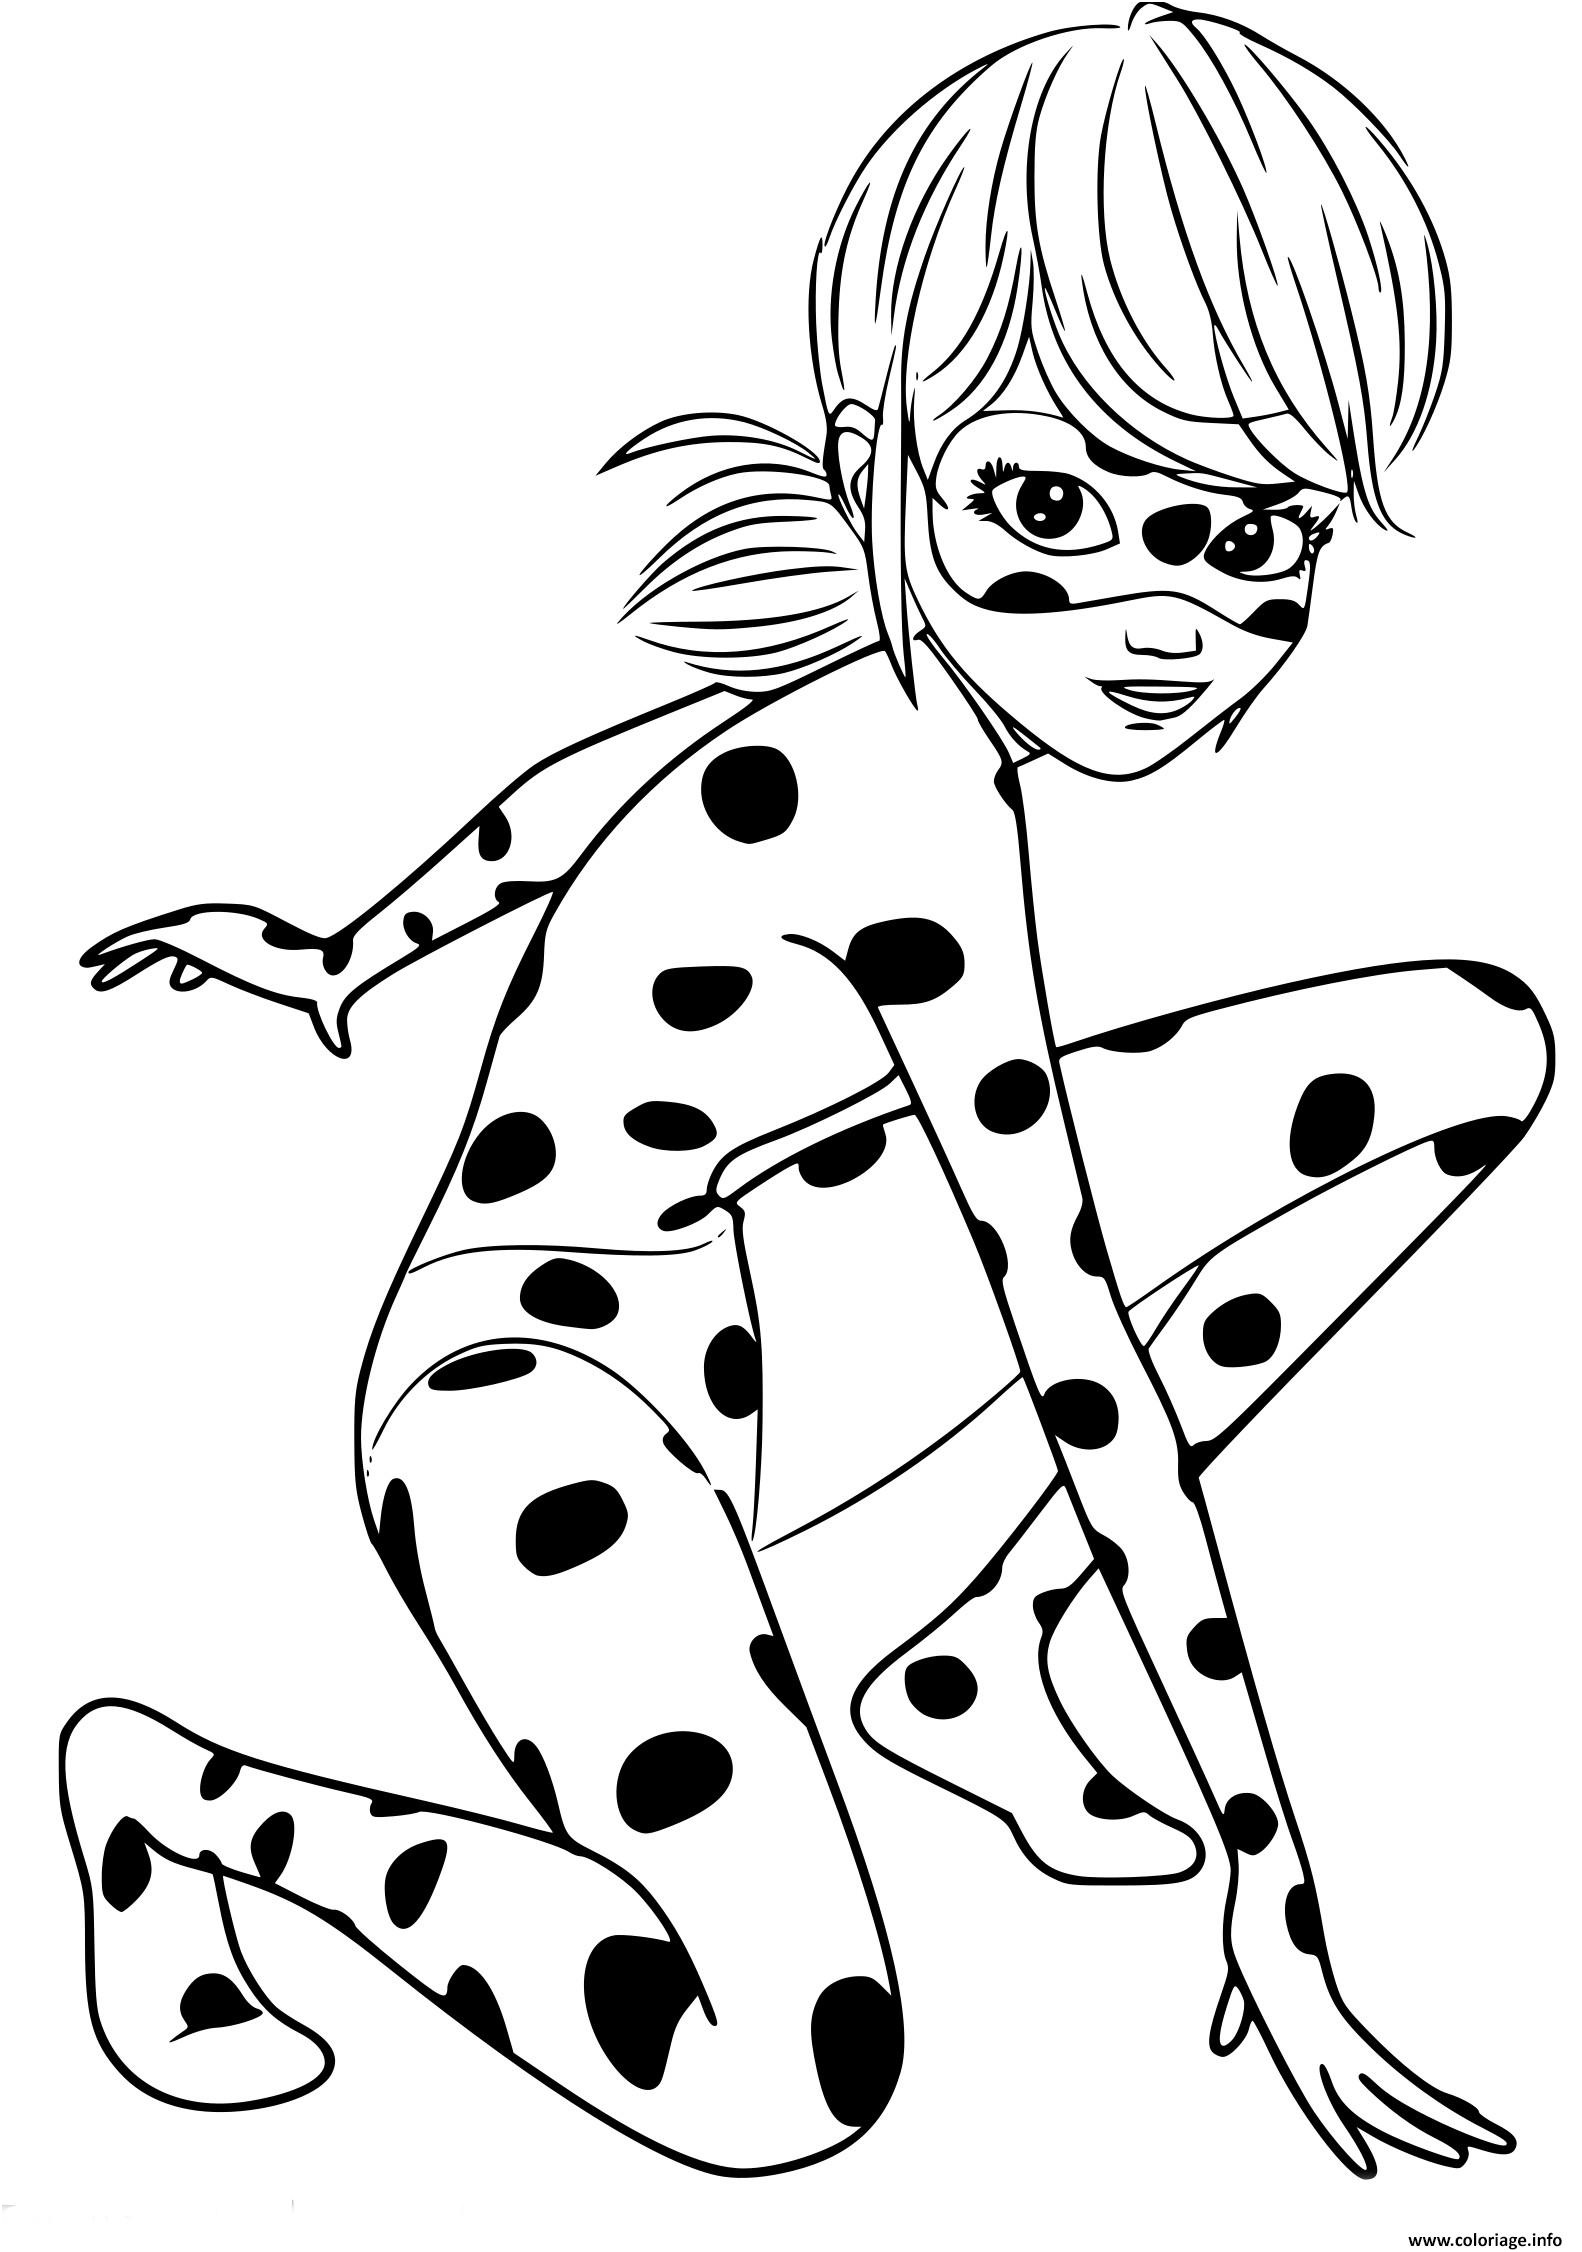 Coloriage À Imprimer Chat Meilleur De Coloriage Ladybug Miraculous Chat Noir original